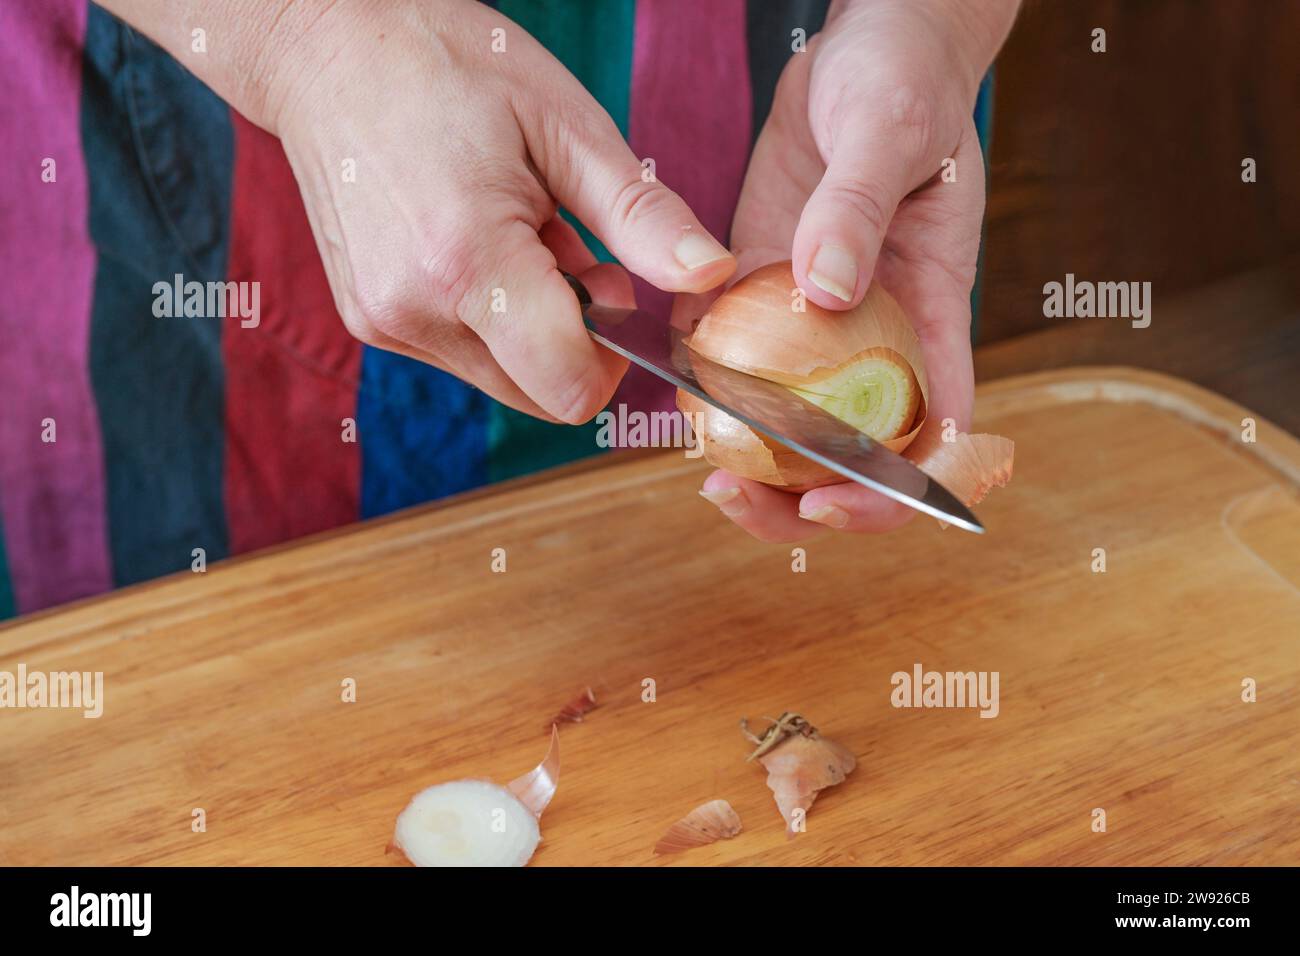 Mains d'une femme épluchant un oignon avec un couteau de cuisine au-dessus d'une planche à découper en bois, préparation pour cuisiner à la maison, espace de copie, foyer sélectionné, narr Banque D'Images